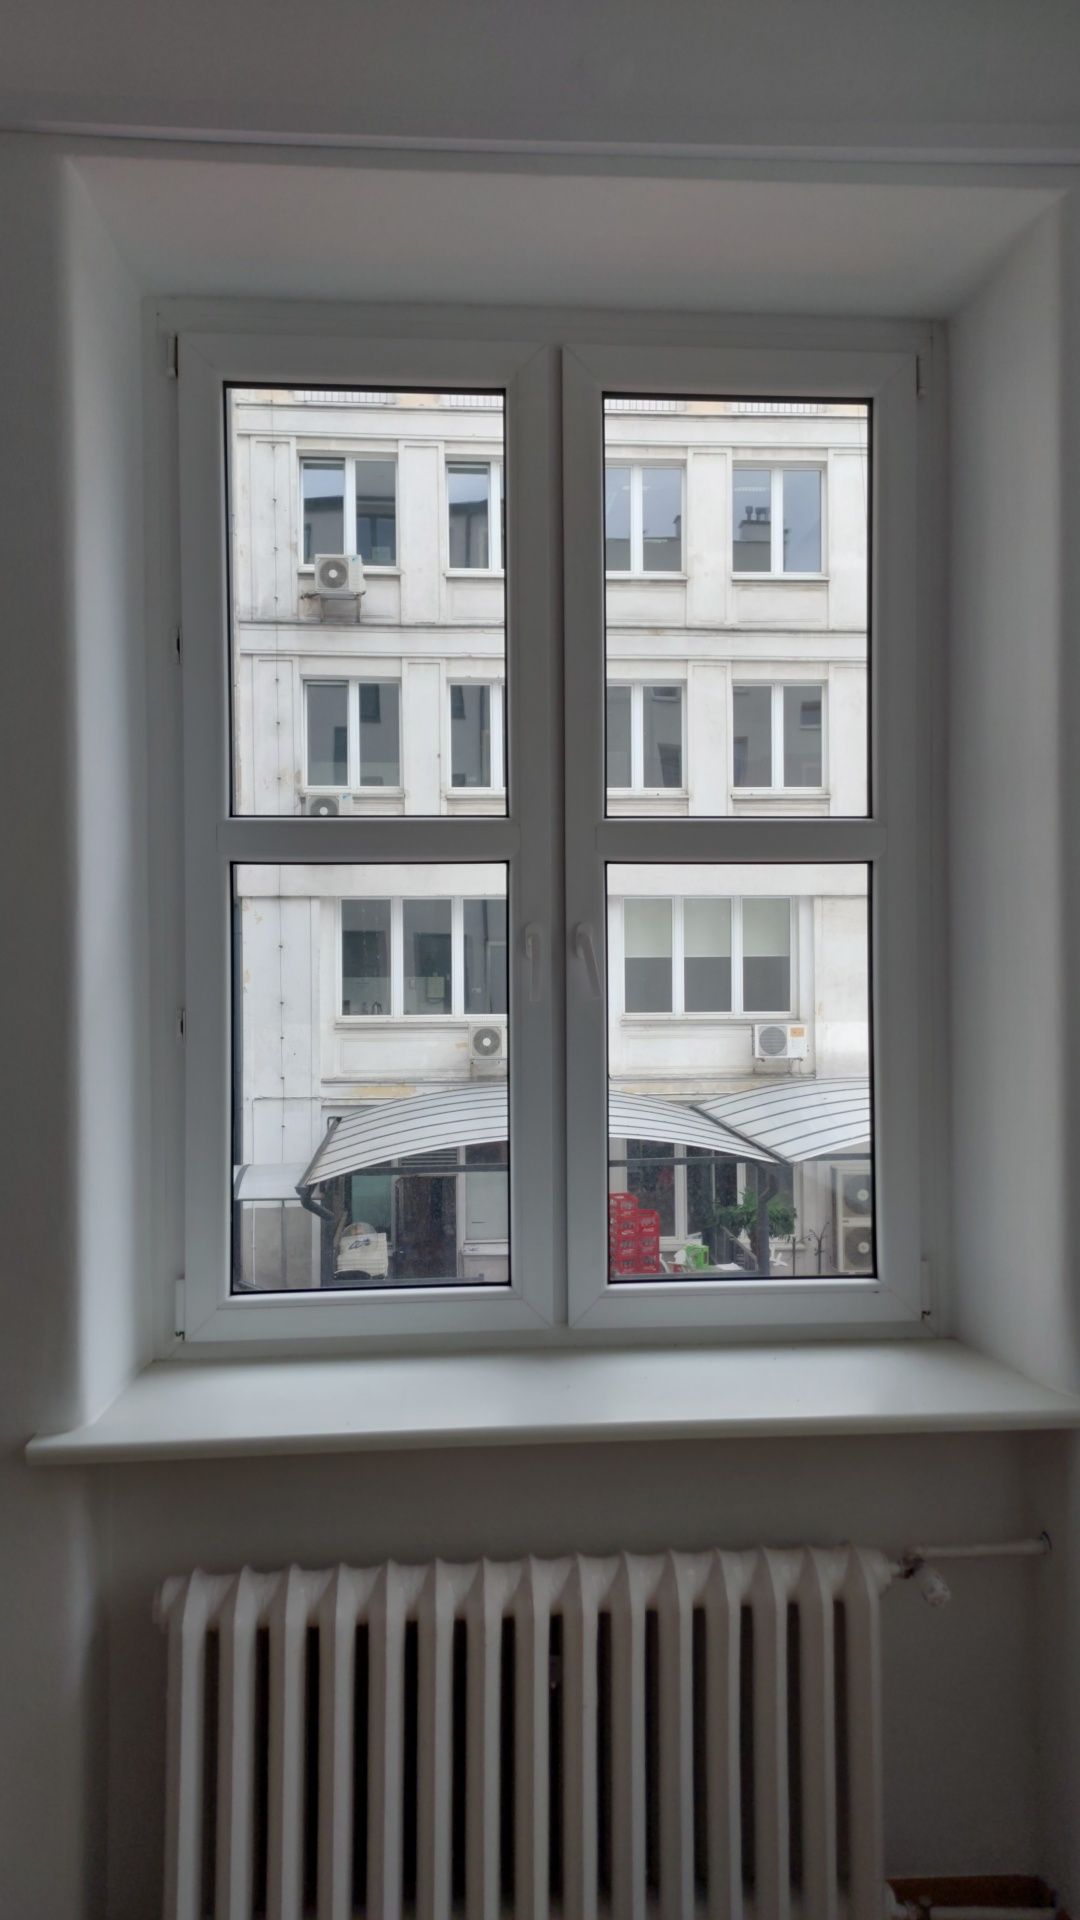 Okna okno PCV wymiarach szerokość 124cm wysokość 190cm